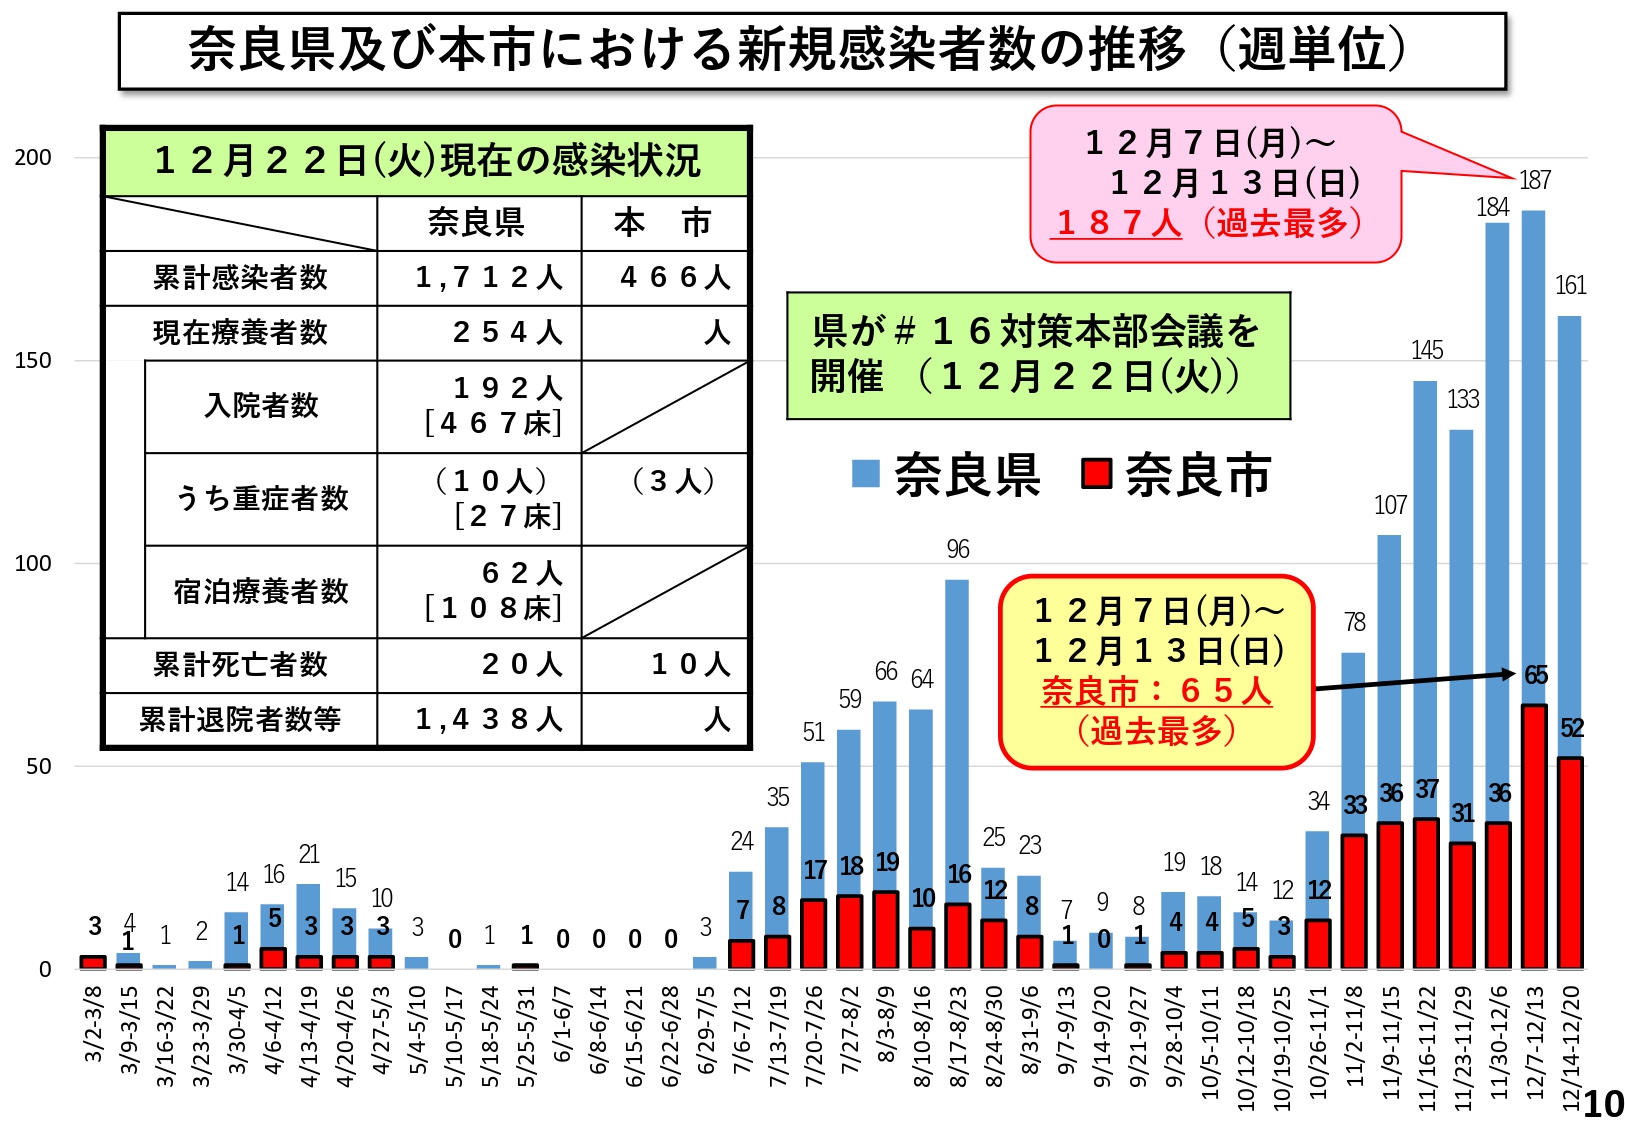 奈良県及び本市における新規感染者数の推移（週単位）